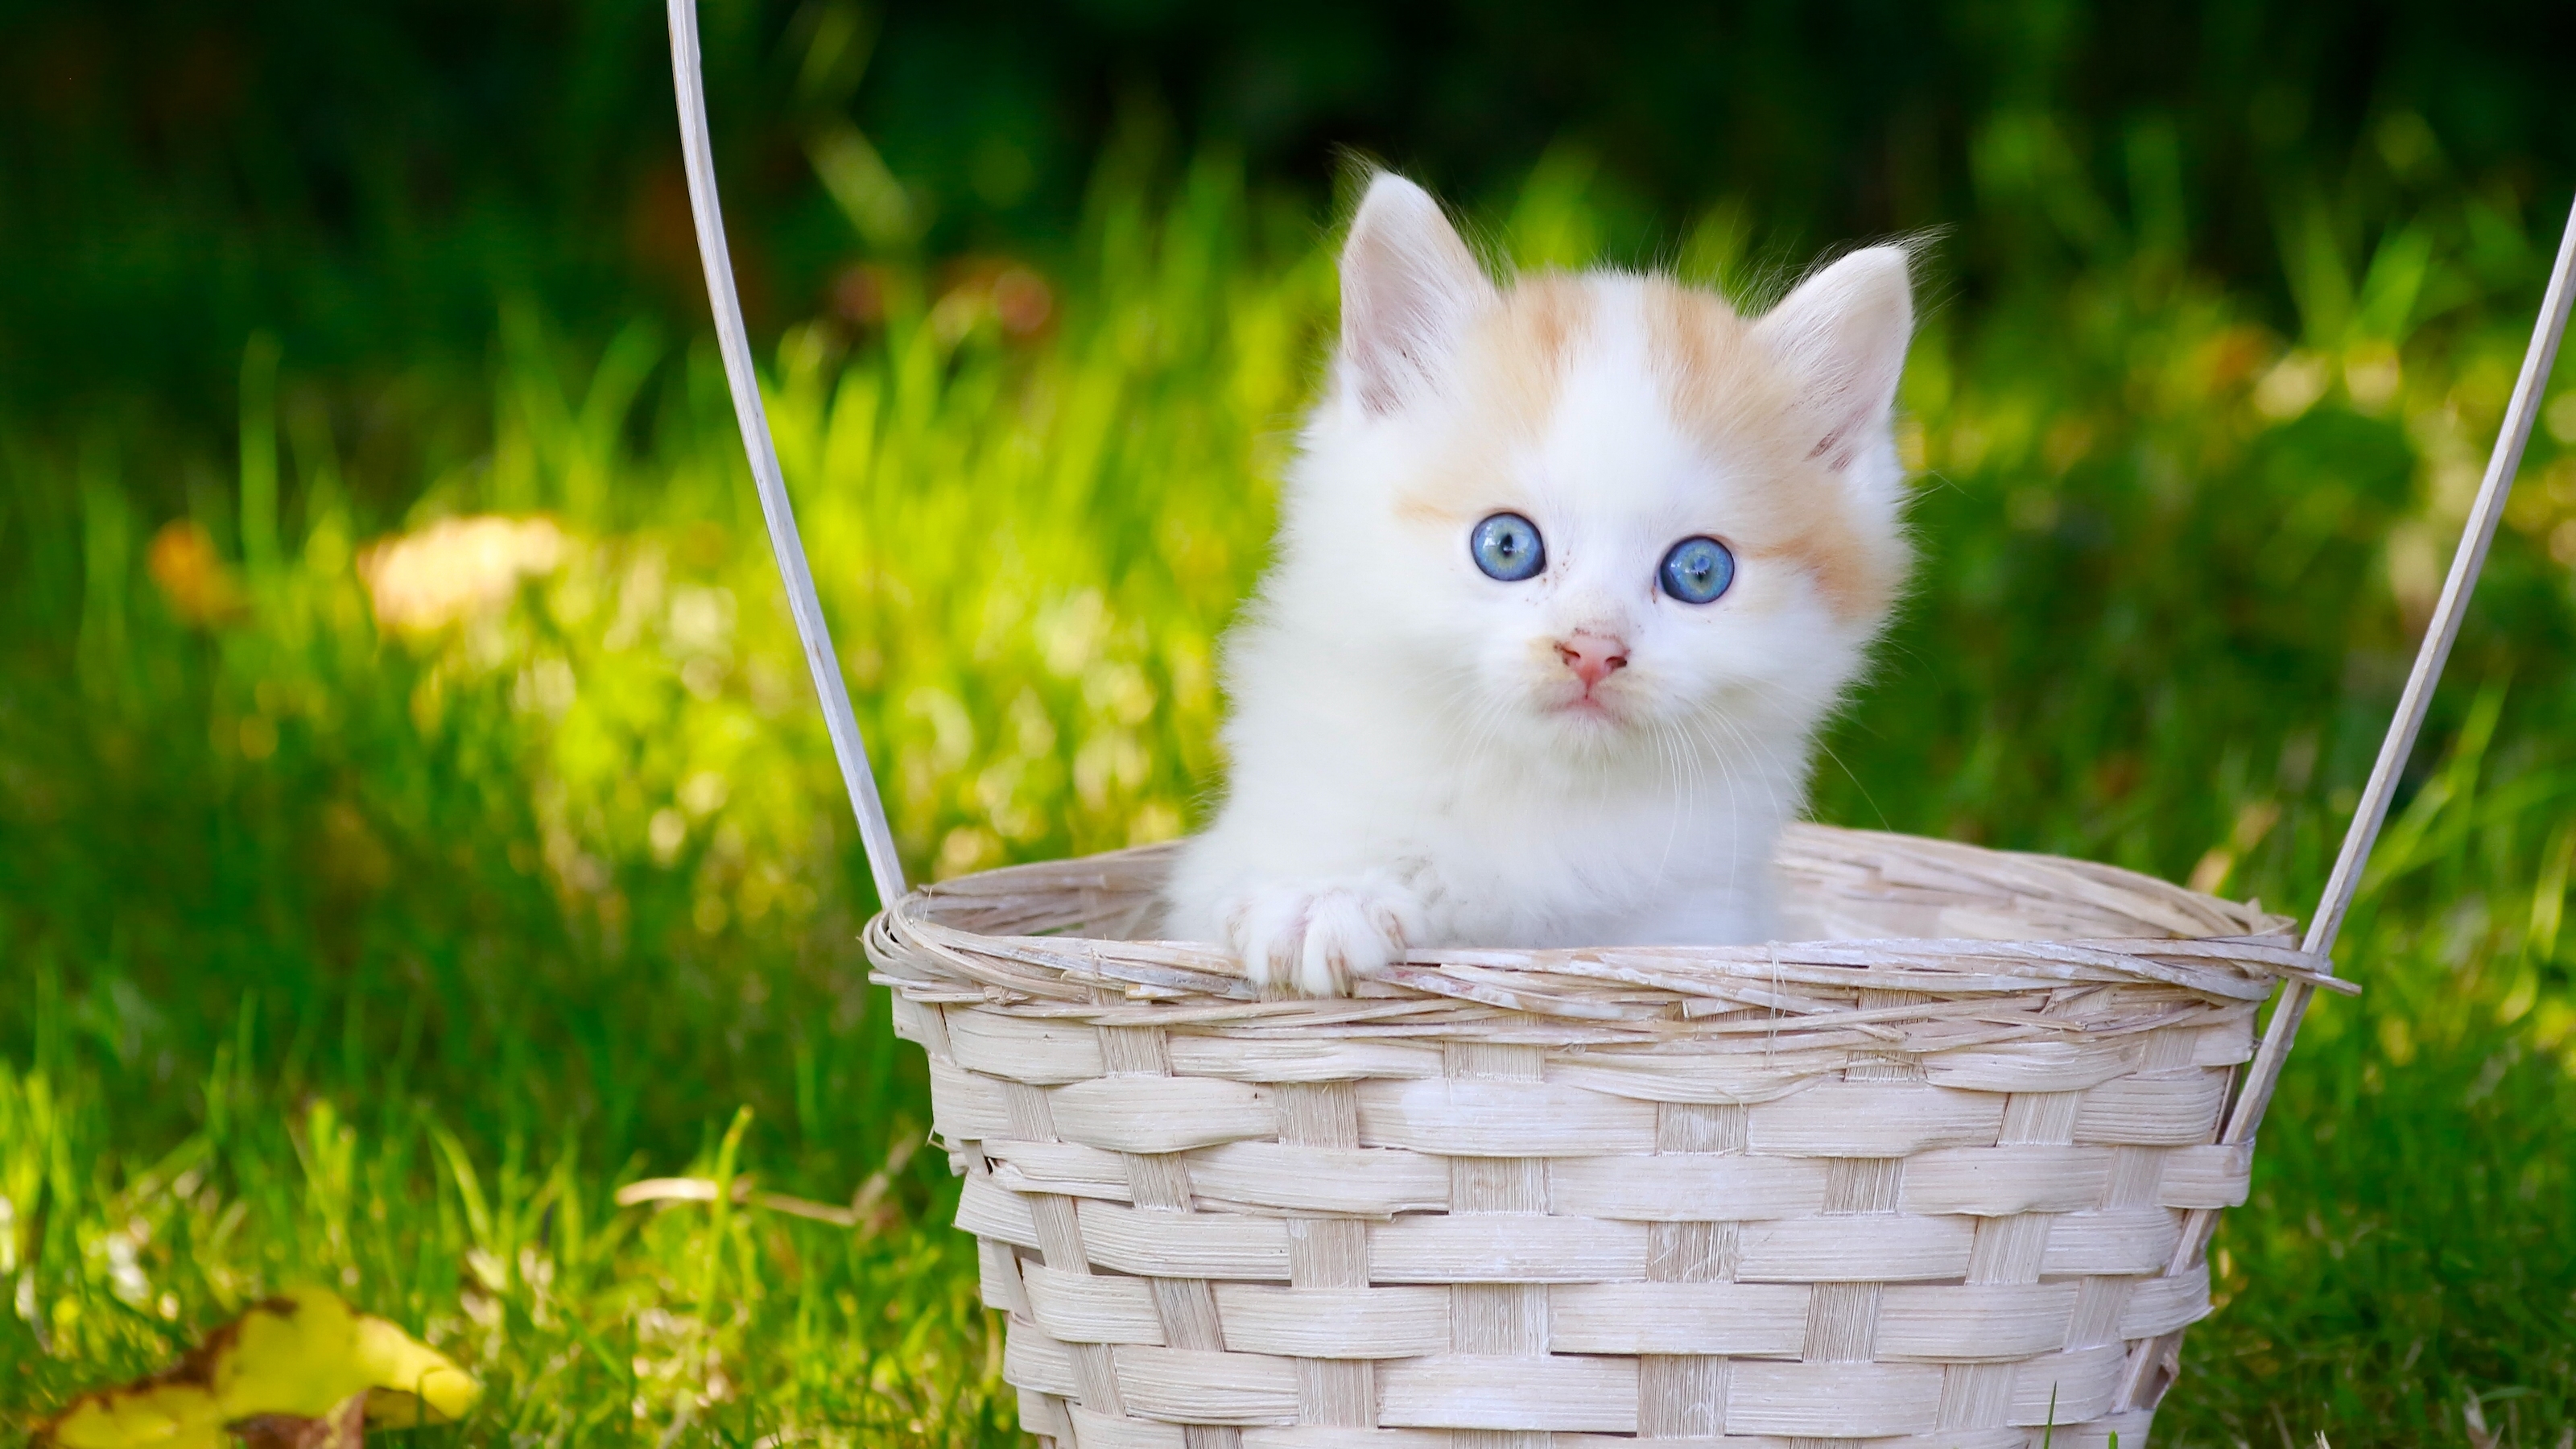 Free download wallpaper Cats, Cat, Kitten, Animal, Basket, Blue Eyes, Baby Animal on your PC desktop